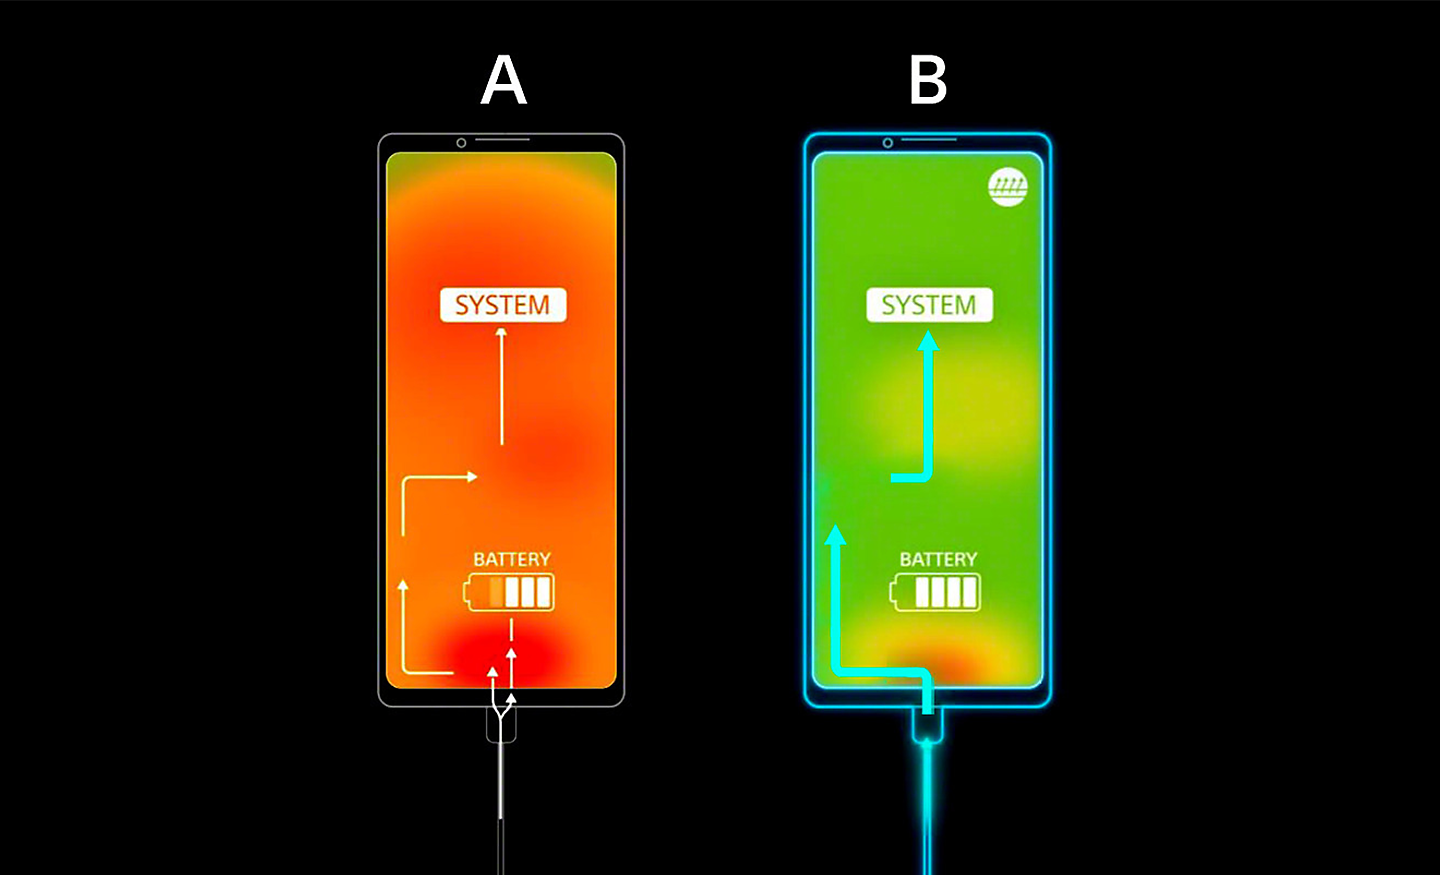 Abbildung mit Telefon A, das durch Überhitzung einen orangen Bildschirm hat, und Telefon B mit grünem Bildschirm